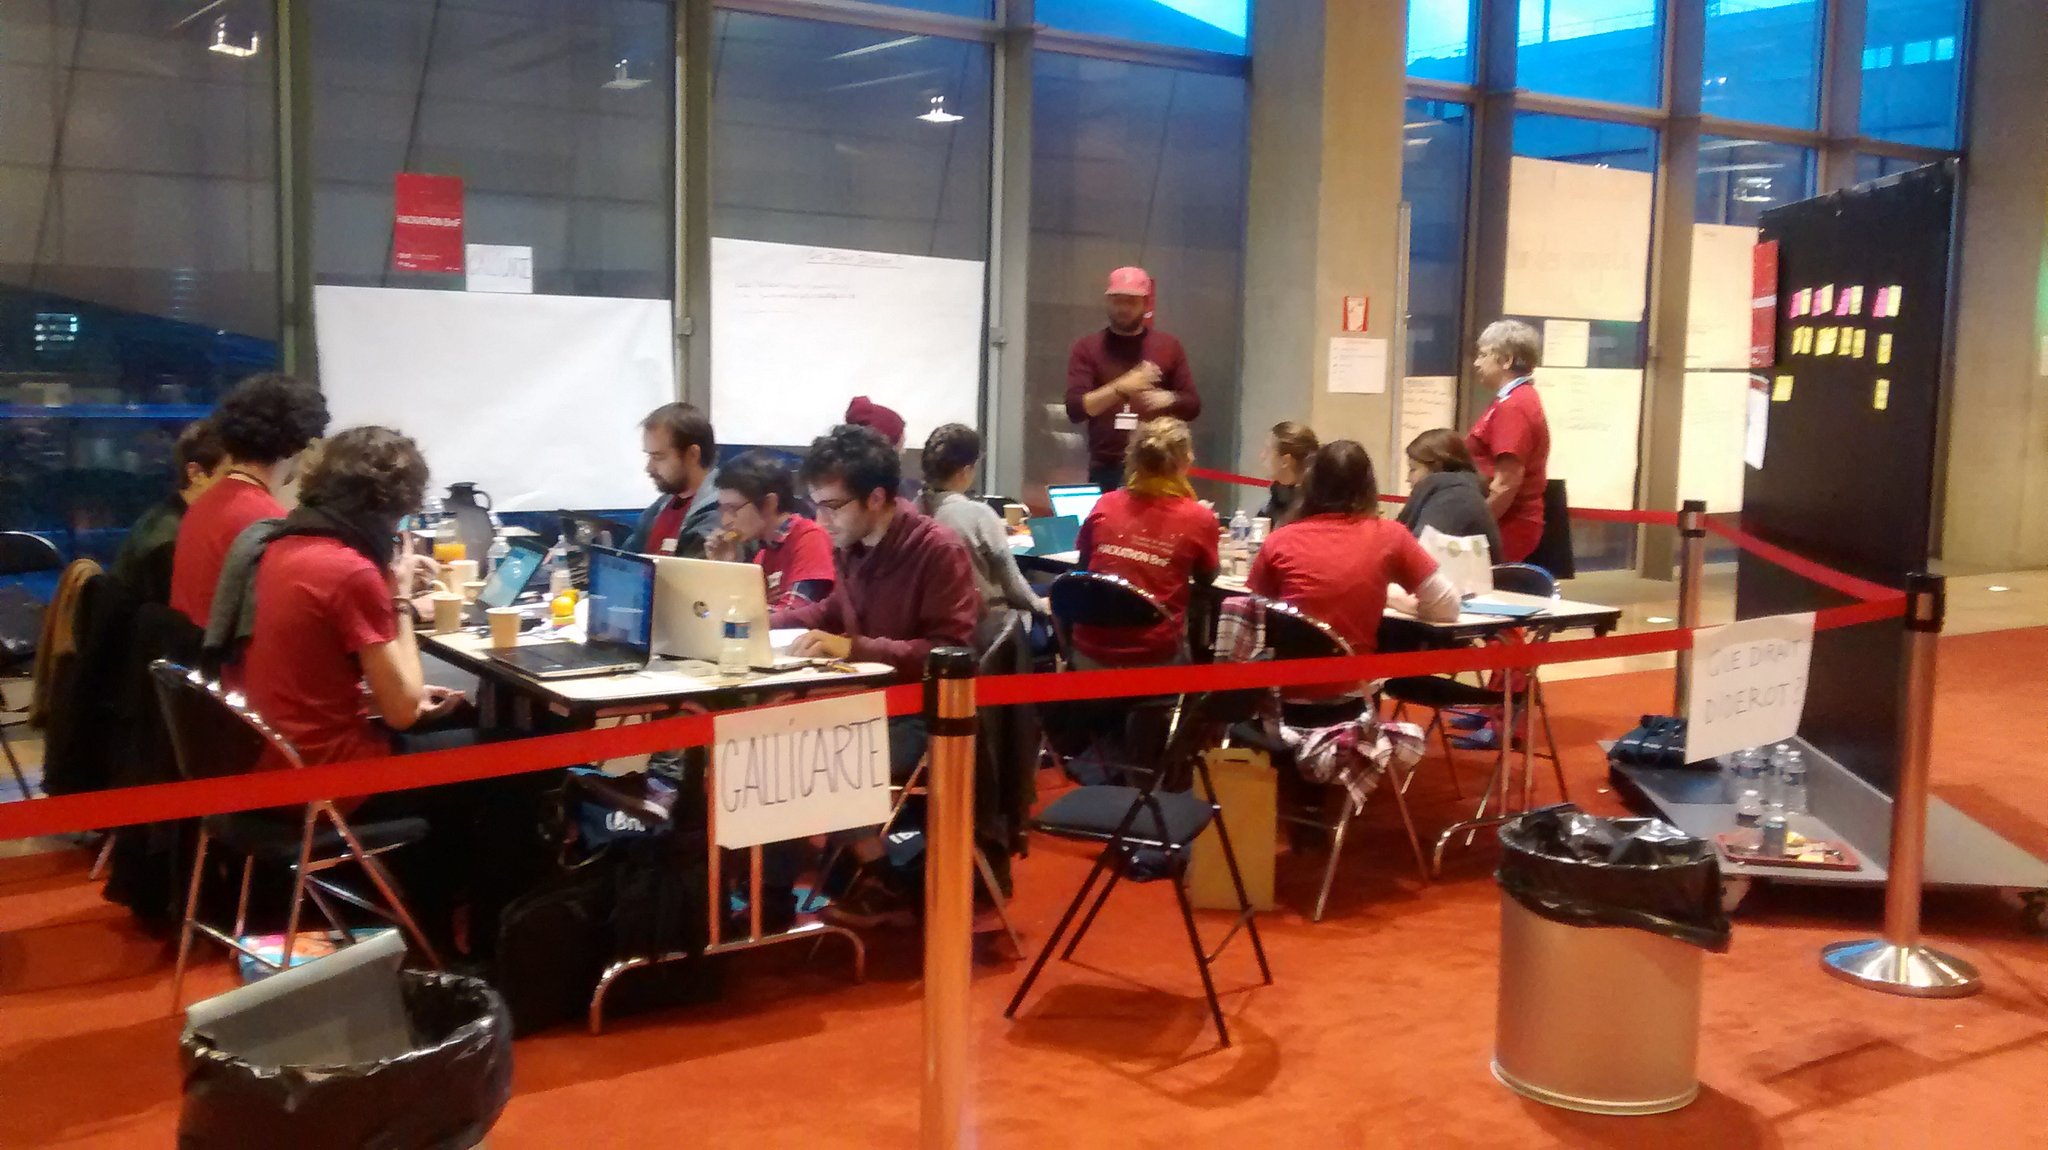 #hackathonBnF jour 2 : le jour se lève et le hall Ouest s'anime à nouveau... https://t.co/MseUxrry5g